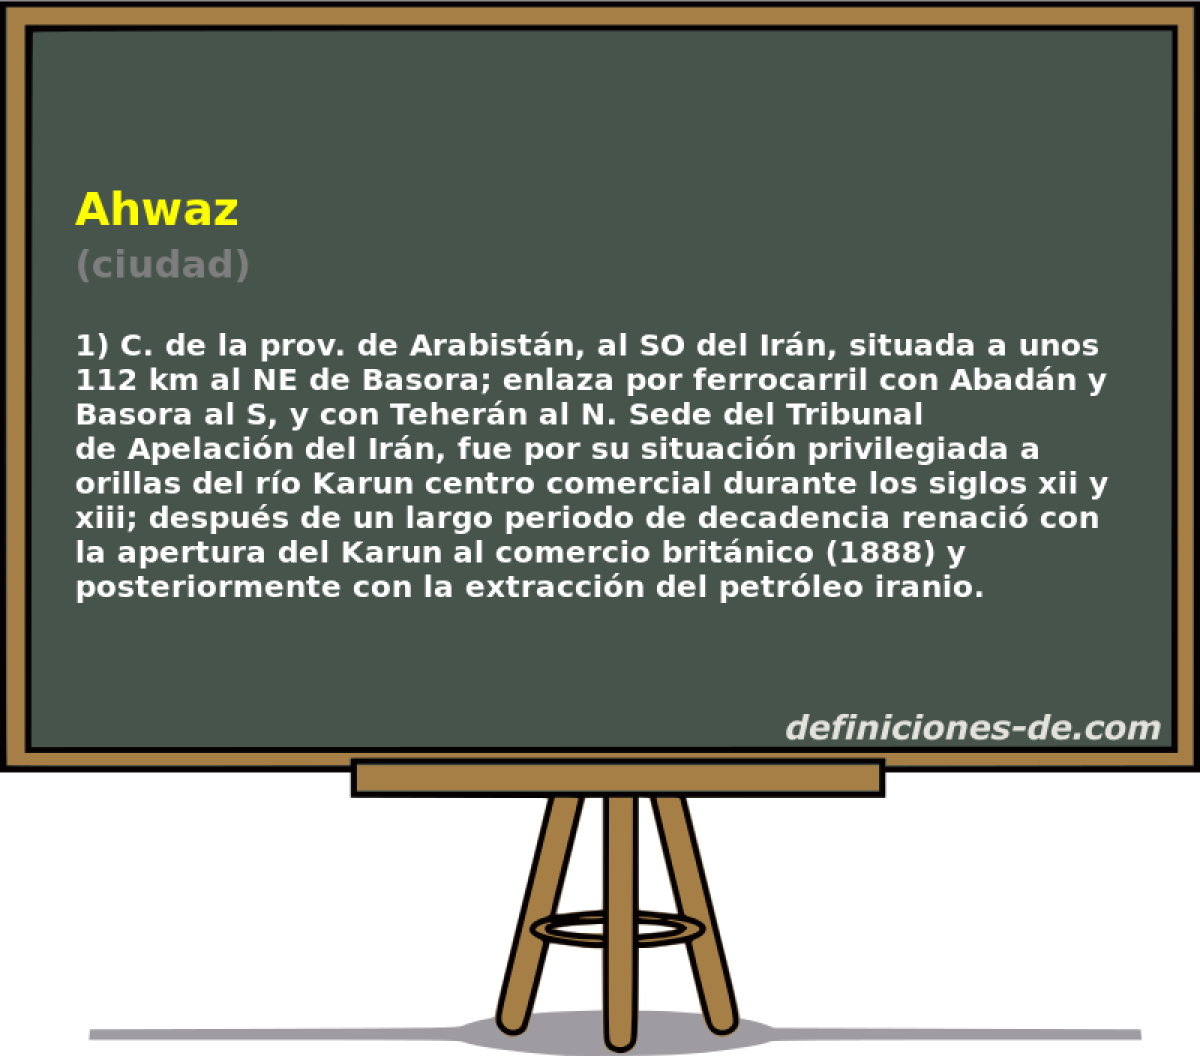 Ahwaz (ciudad)